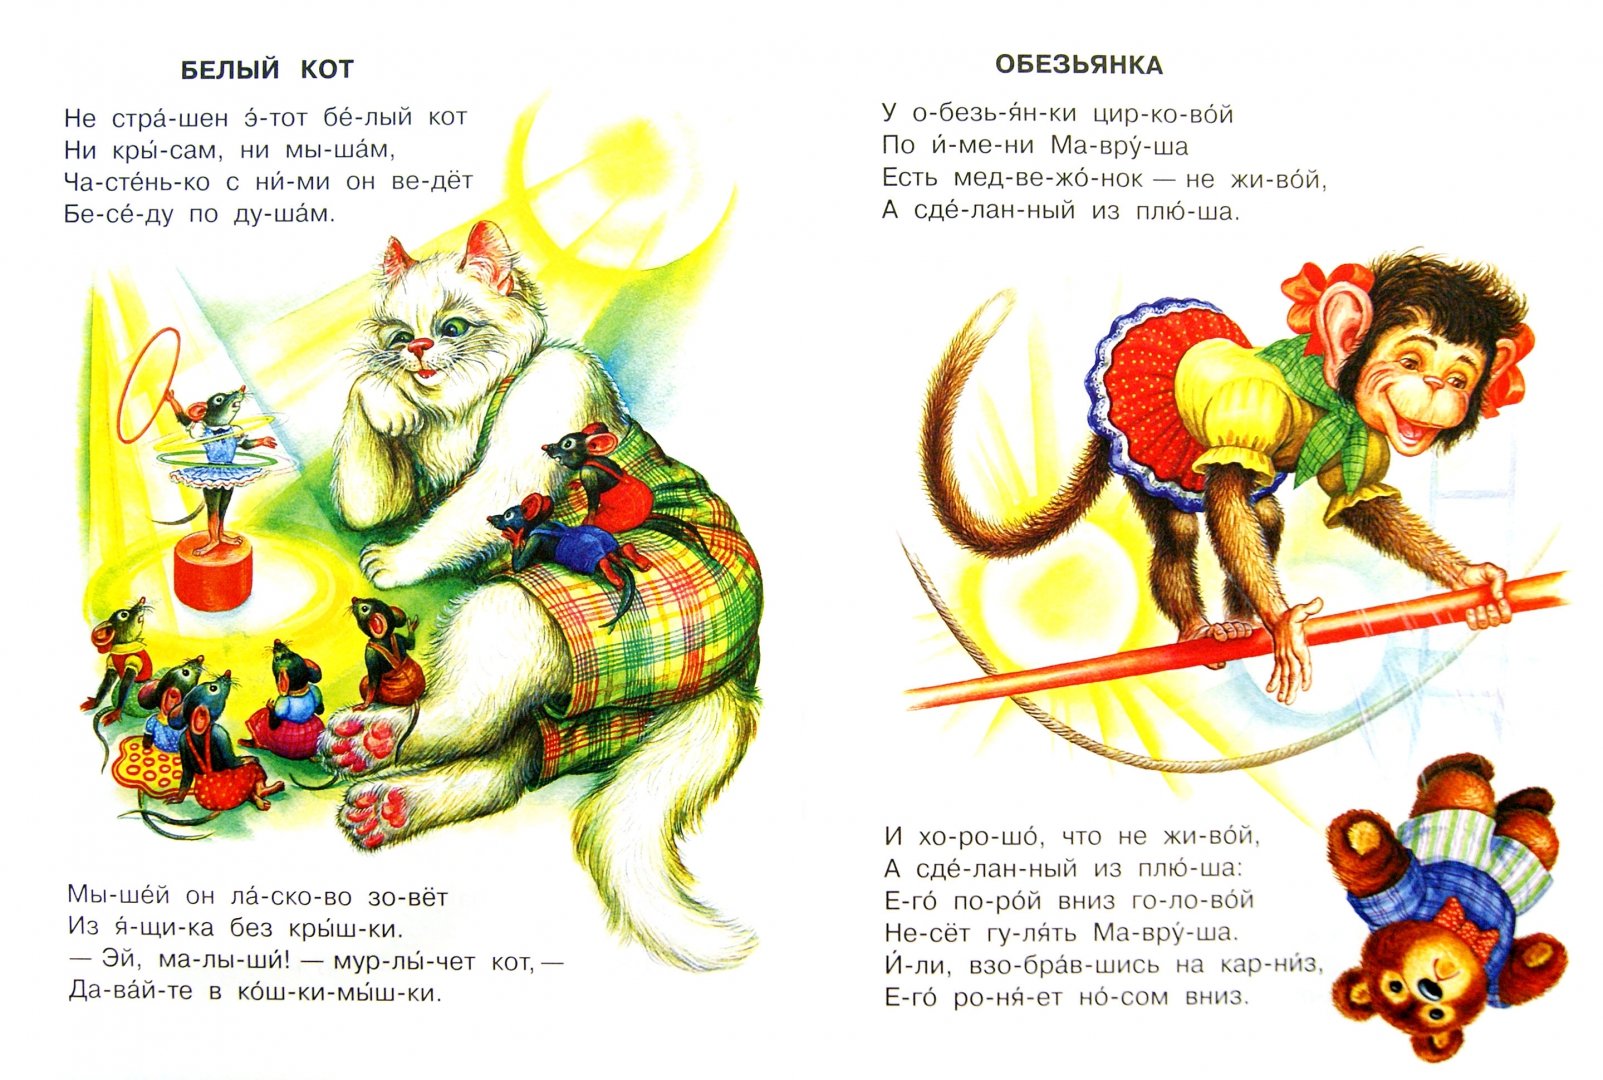 Иллюстрация 1 из 6 для Цирк - Самуил Маршак | Лабиринт - книги. Источник: Лабиринт